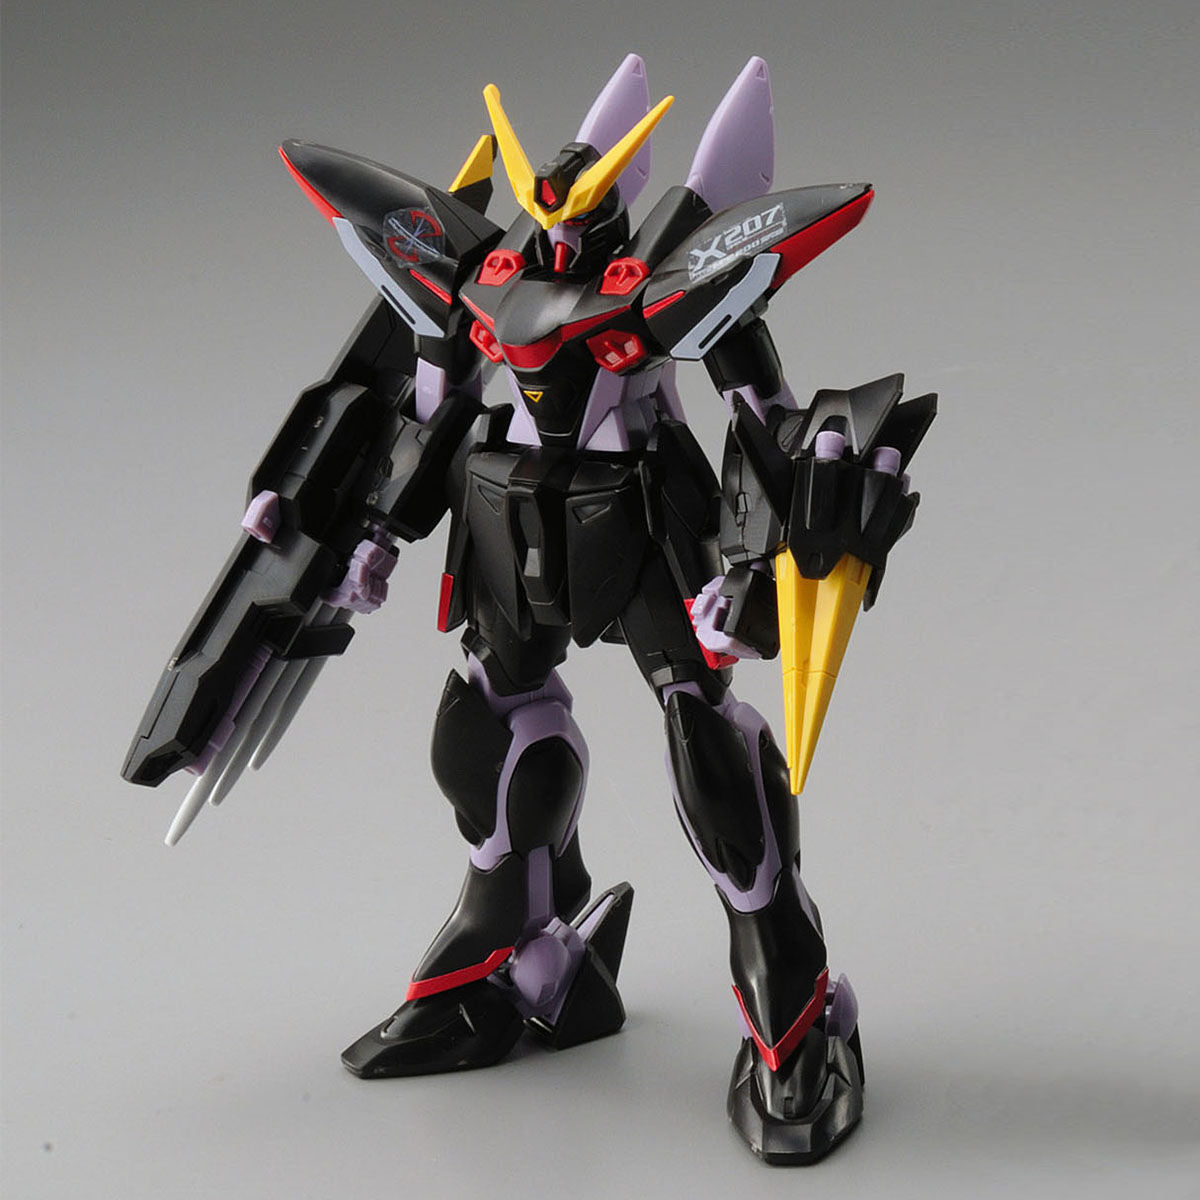 Bandai 1/144 HG Seed Remaster R04 Blitz Gundam Plastic Model Kit